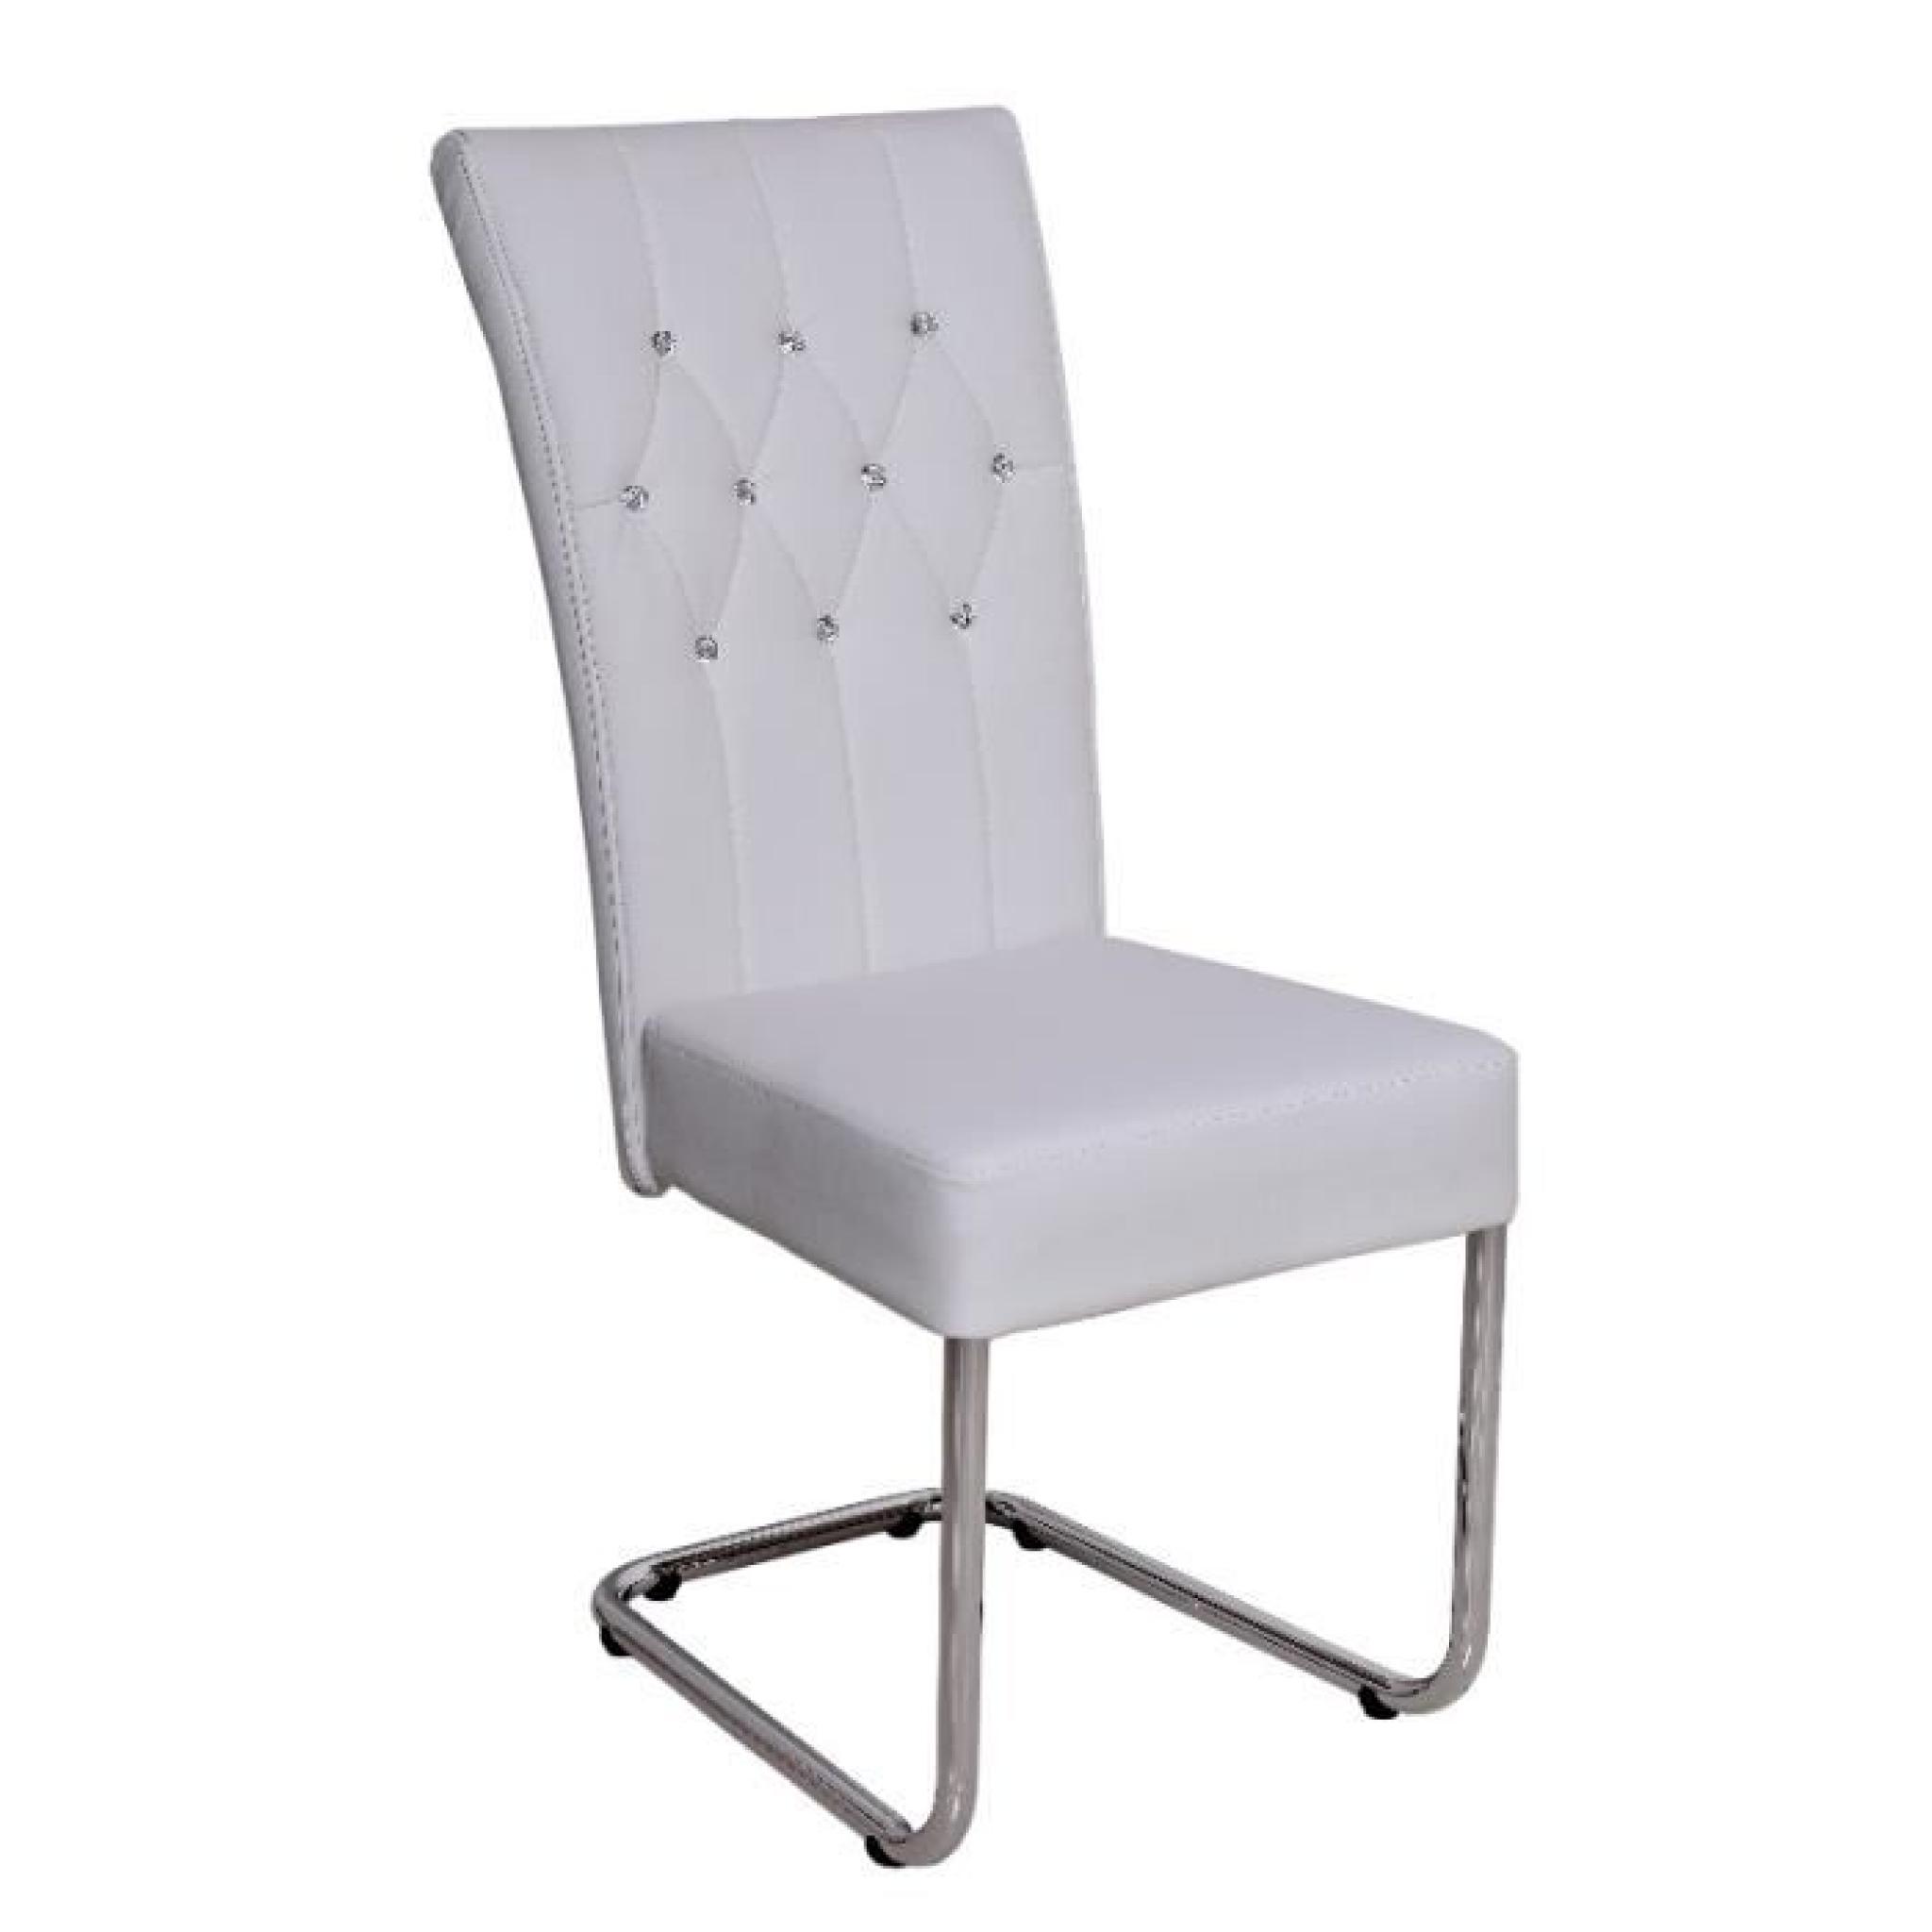 Chaise design coloris blanc avec strass